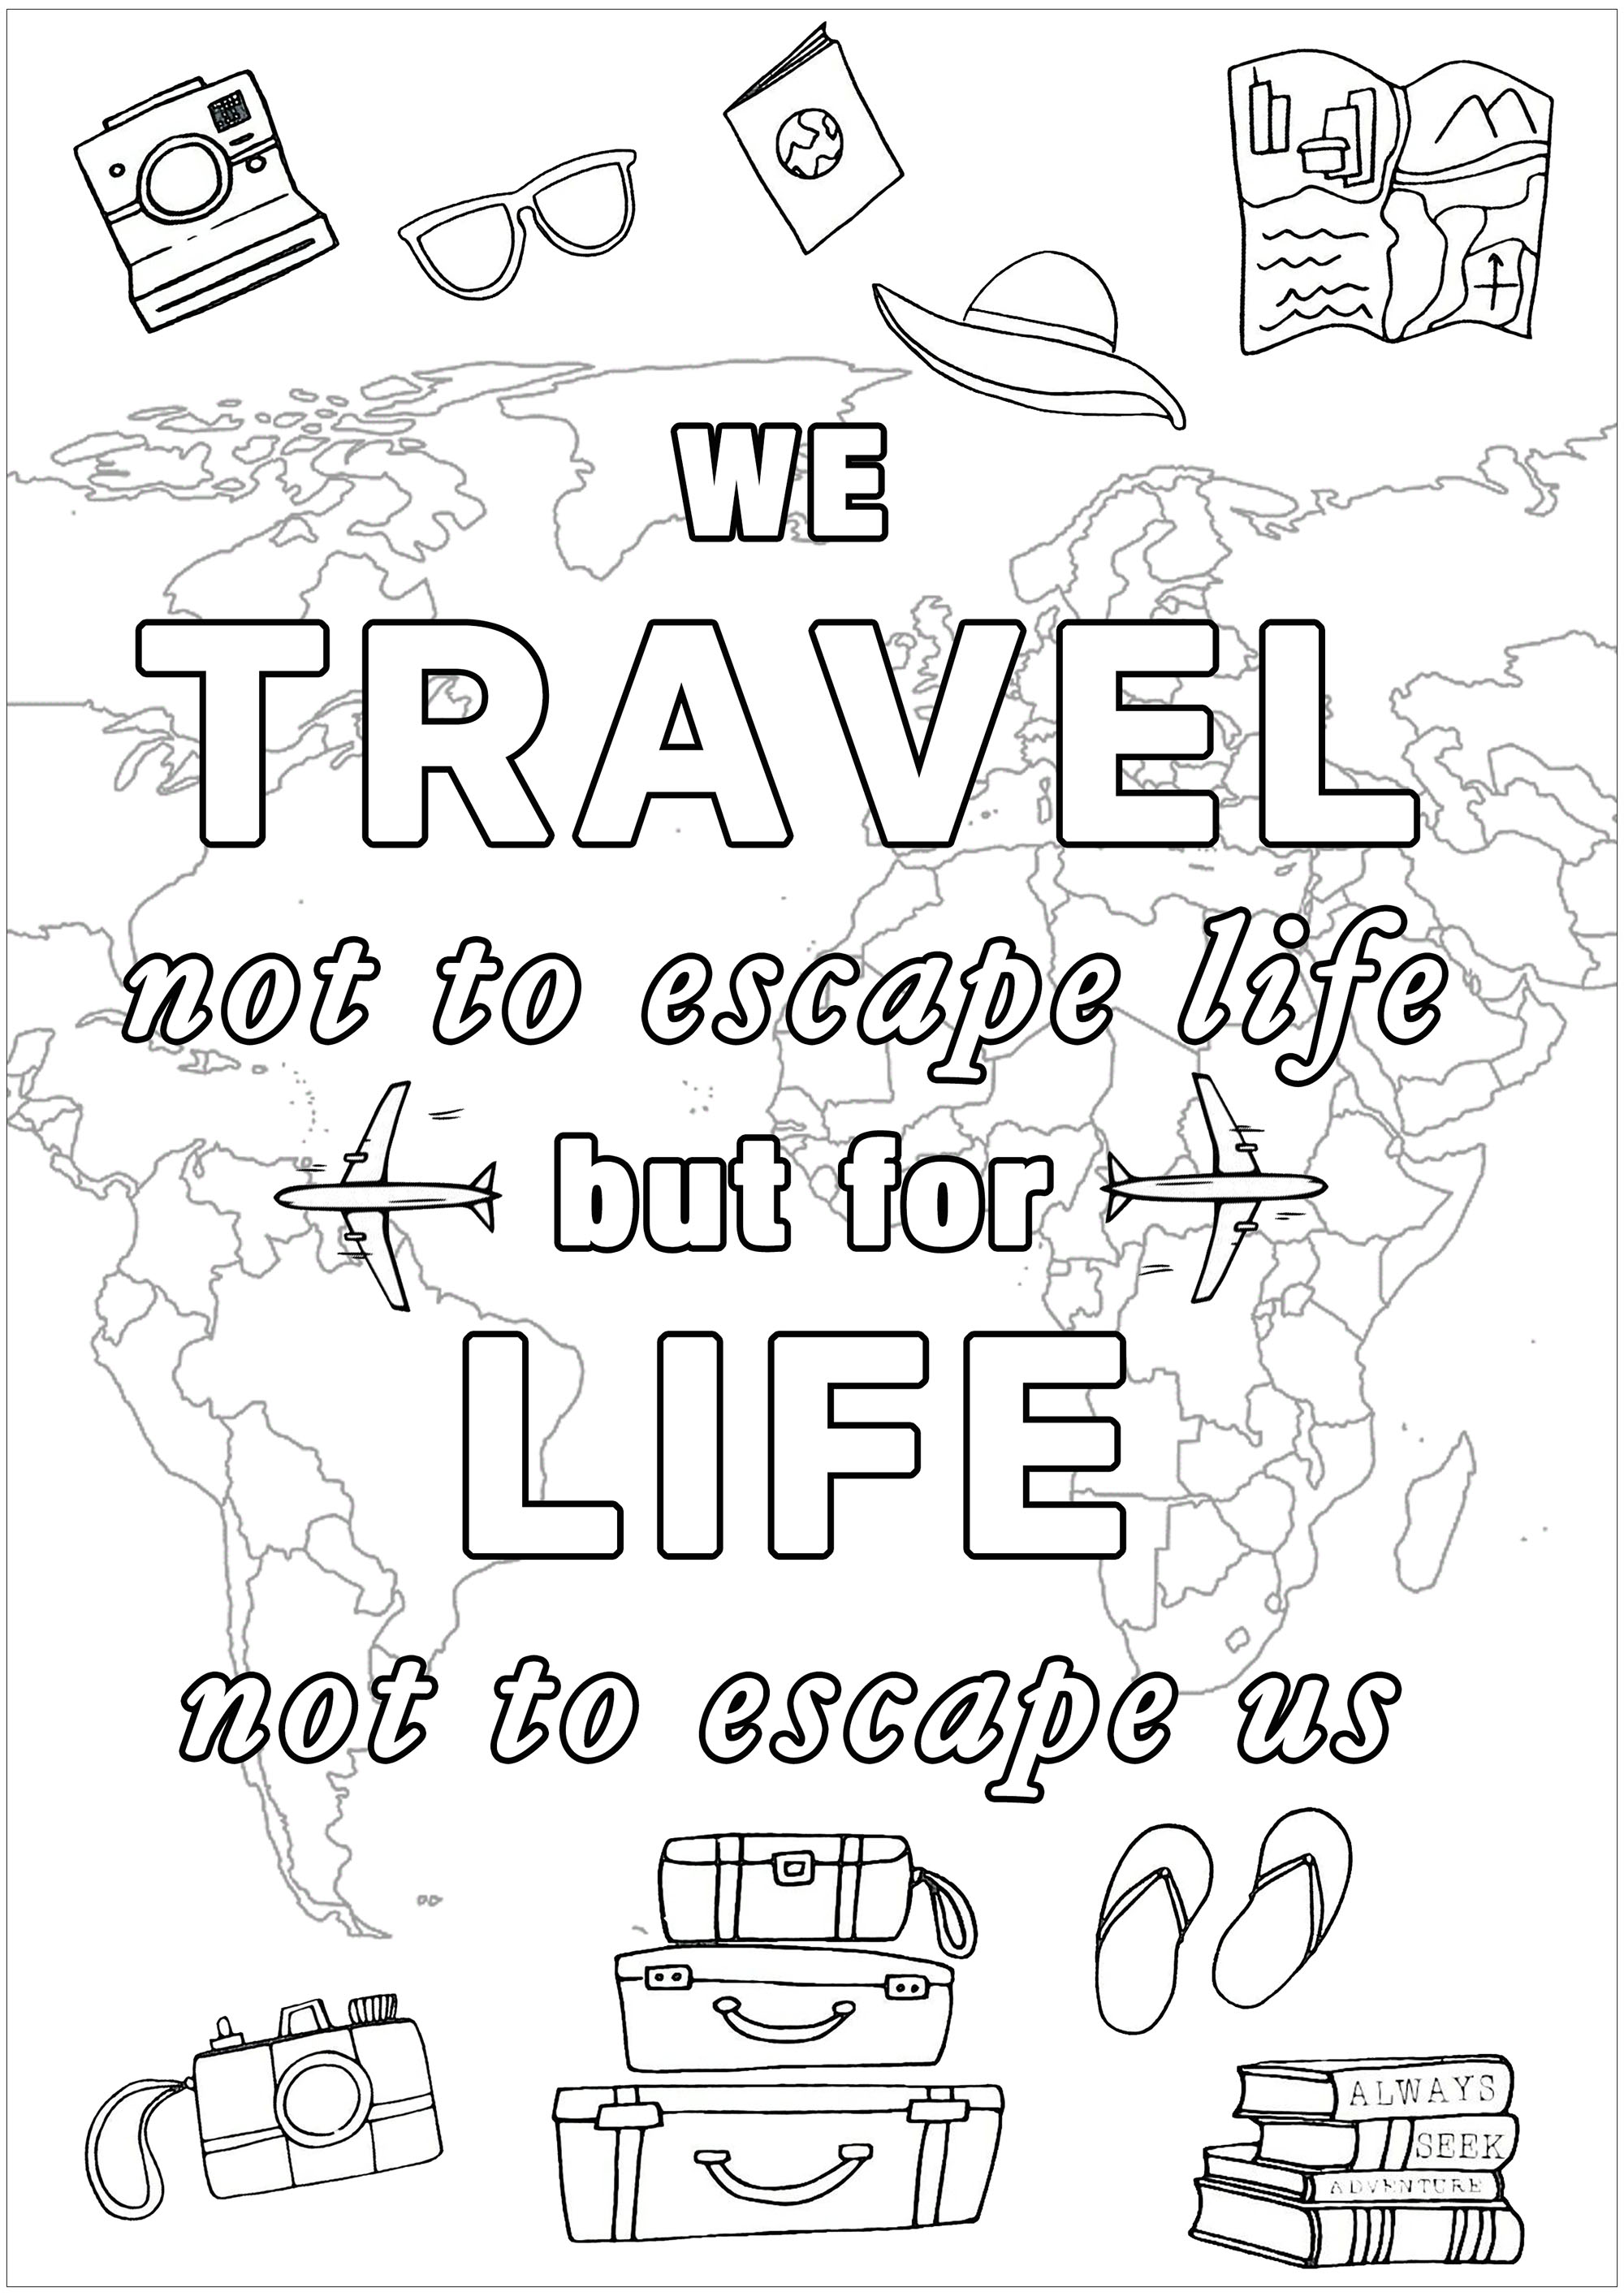 We travel not to escape life ... but life not to escape us. (On voyage non pas pour échapper à la vie, mais pour que la vie de nous échappe pas)